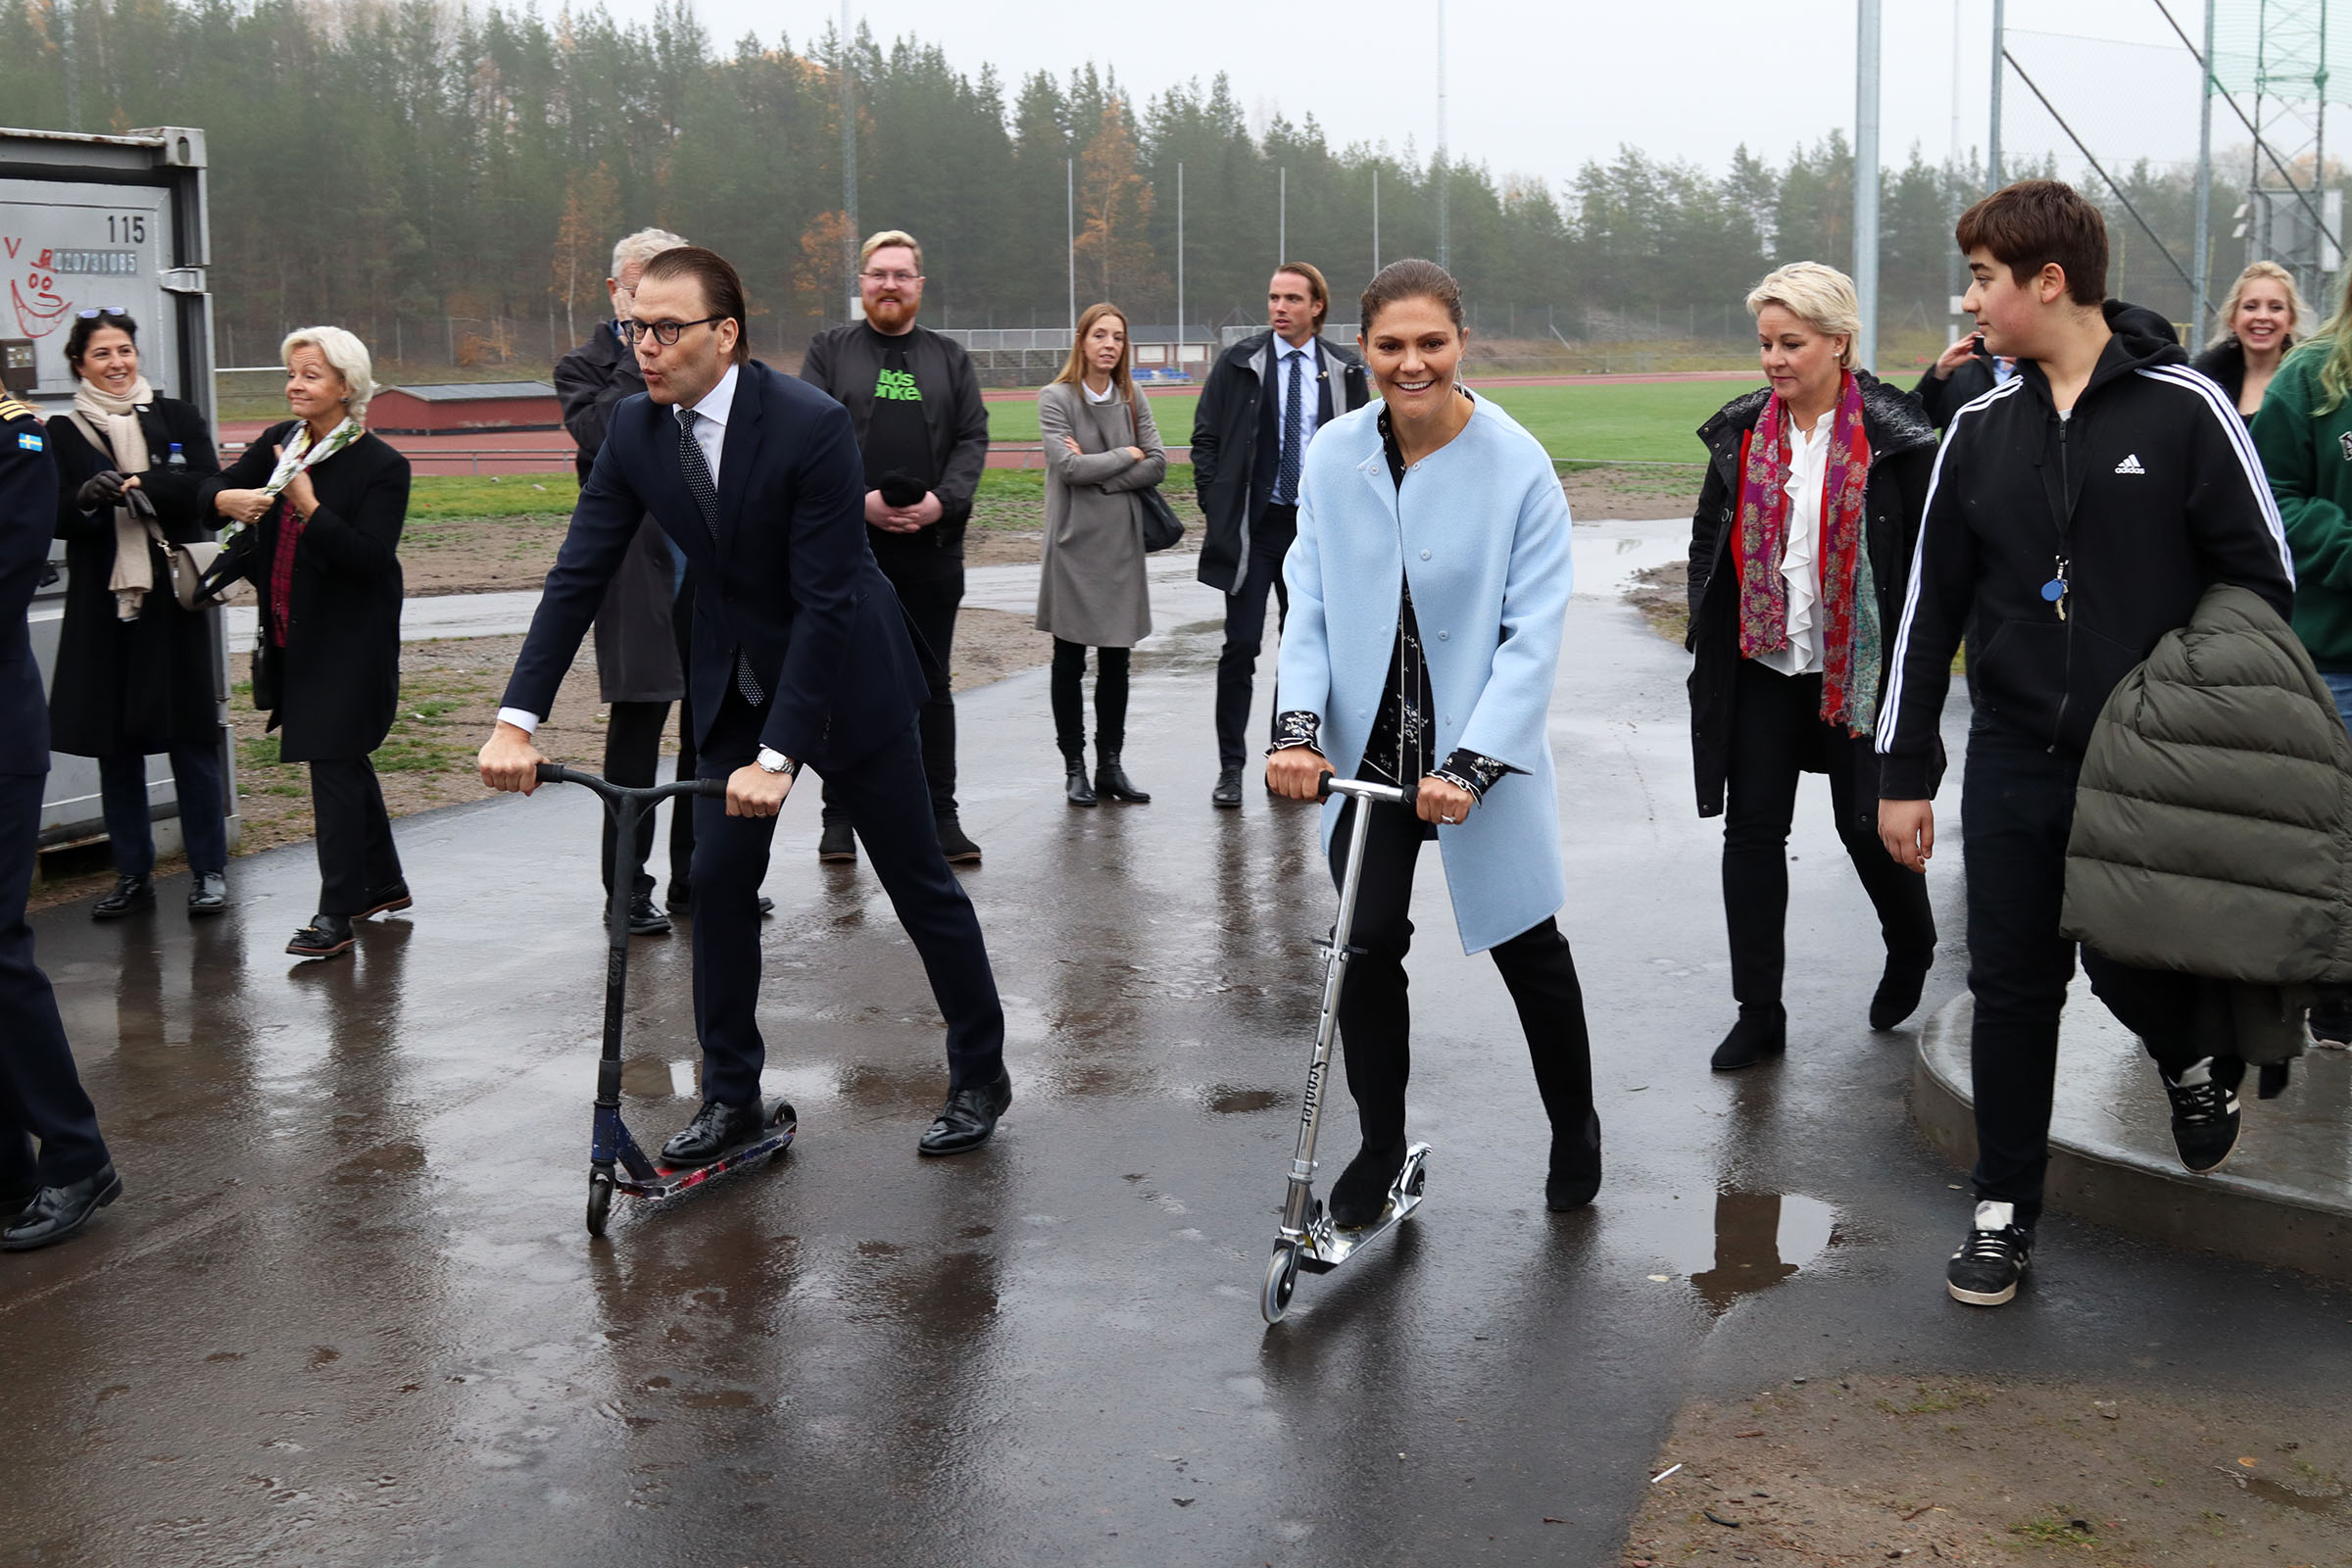 Prins Daniel och Kronprinsessan Victoria anländer till aktivitetsparken på varsin kick-bike. Foto: Johannes Hedlund, Fritidsbanken